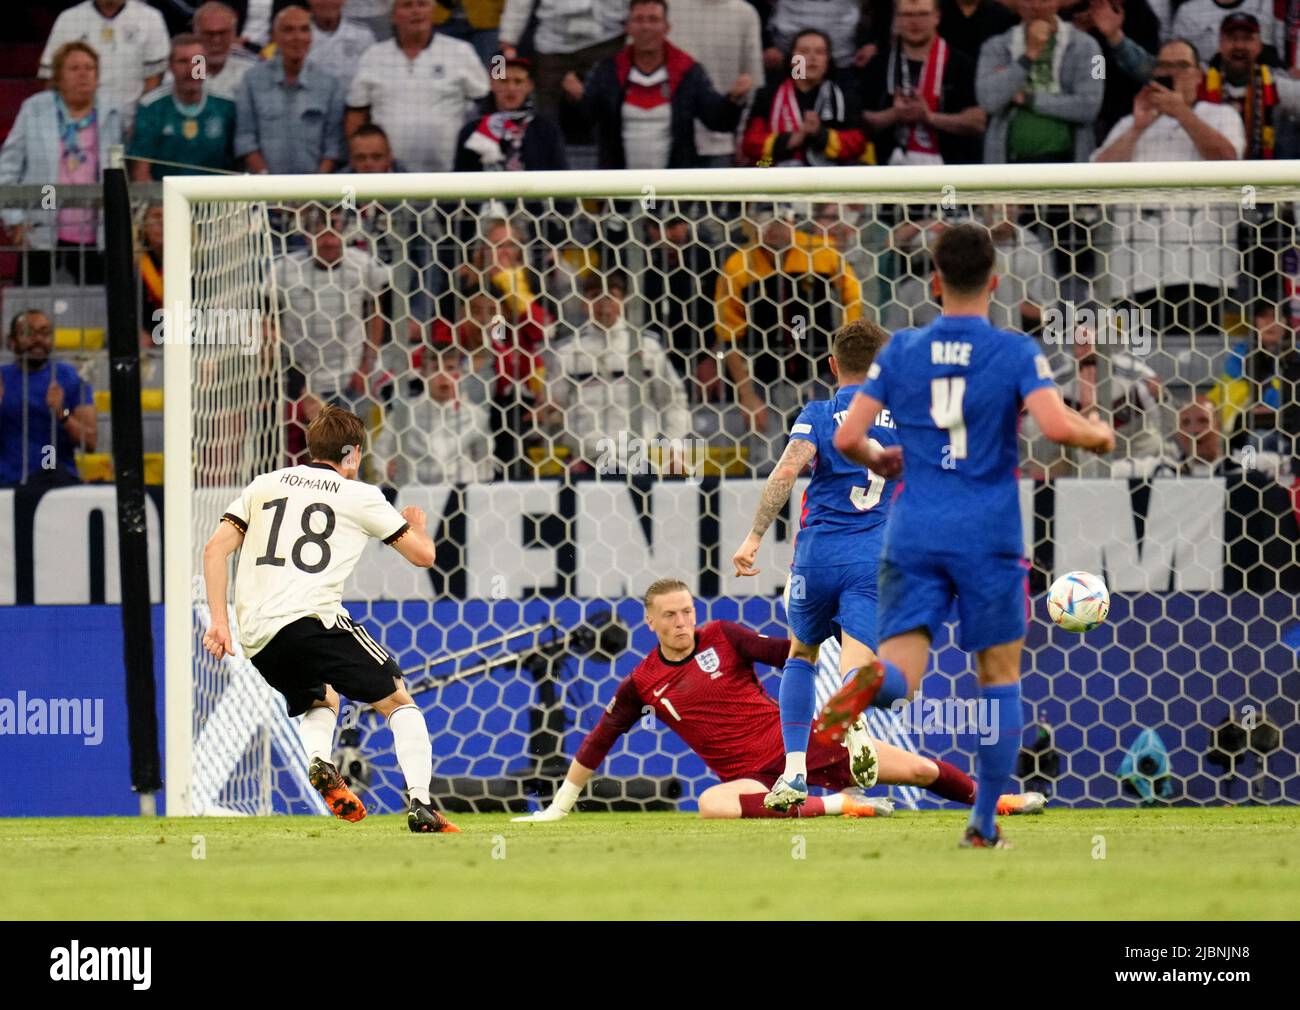 Jonas Hofmann en Allemagne a obtenu un score, mais le but est exclu pour les offenses lors du match de l'UEFA Nations League à l'Allianz Arena de Munich, en Allemagne. Date de la photo: Mardi 7 juin 2022. Banque D'Images